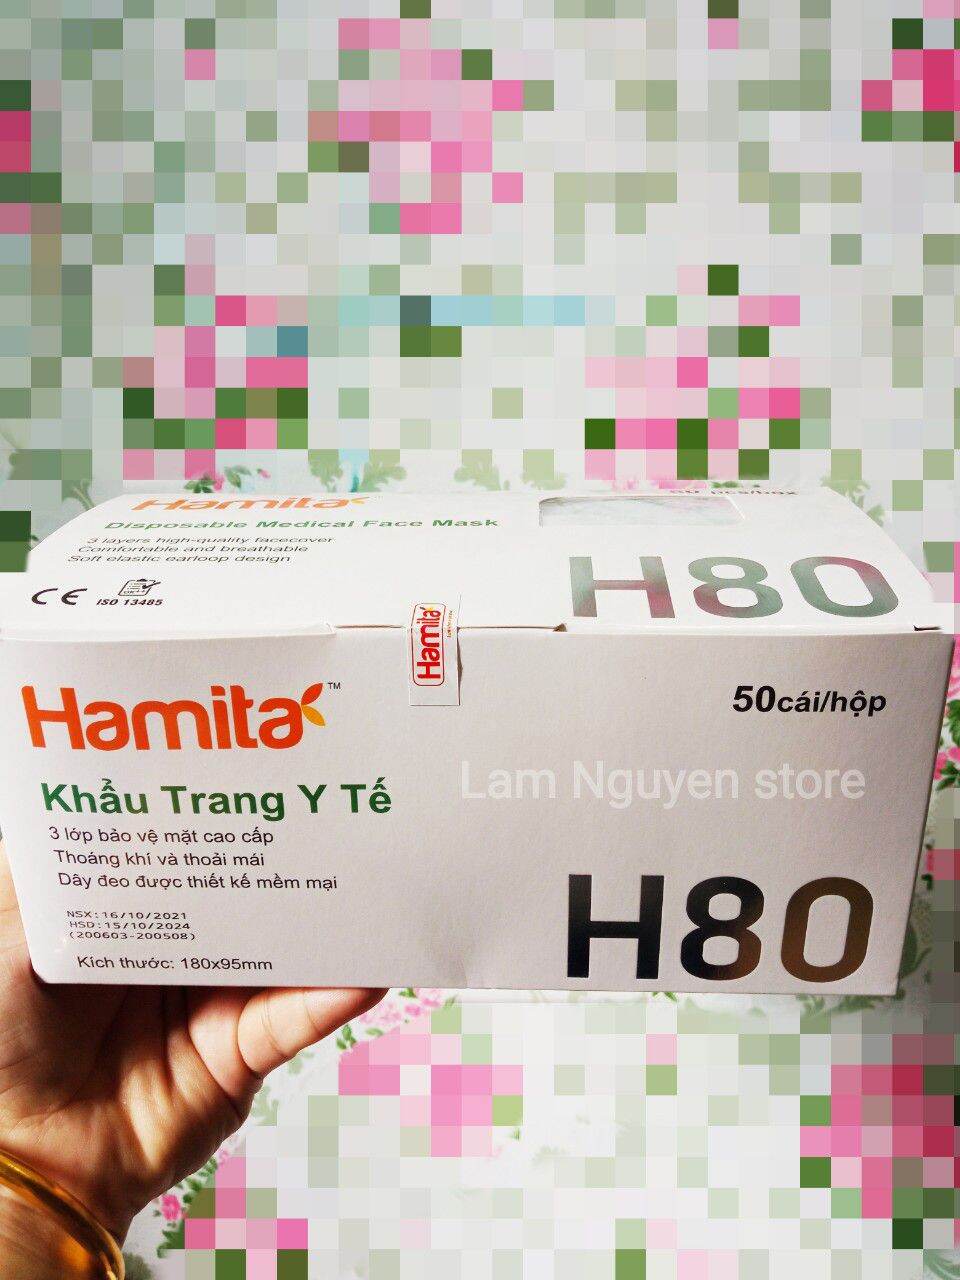 Khẩu trang y tế Hamita H80 tiêu chuẩn hàng xuất khẩu